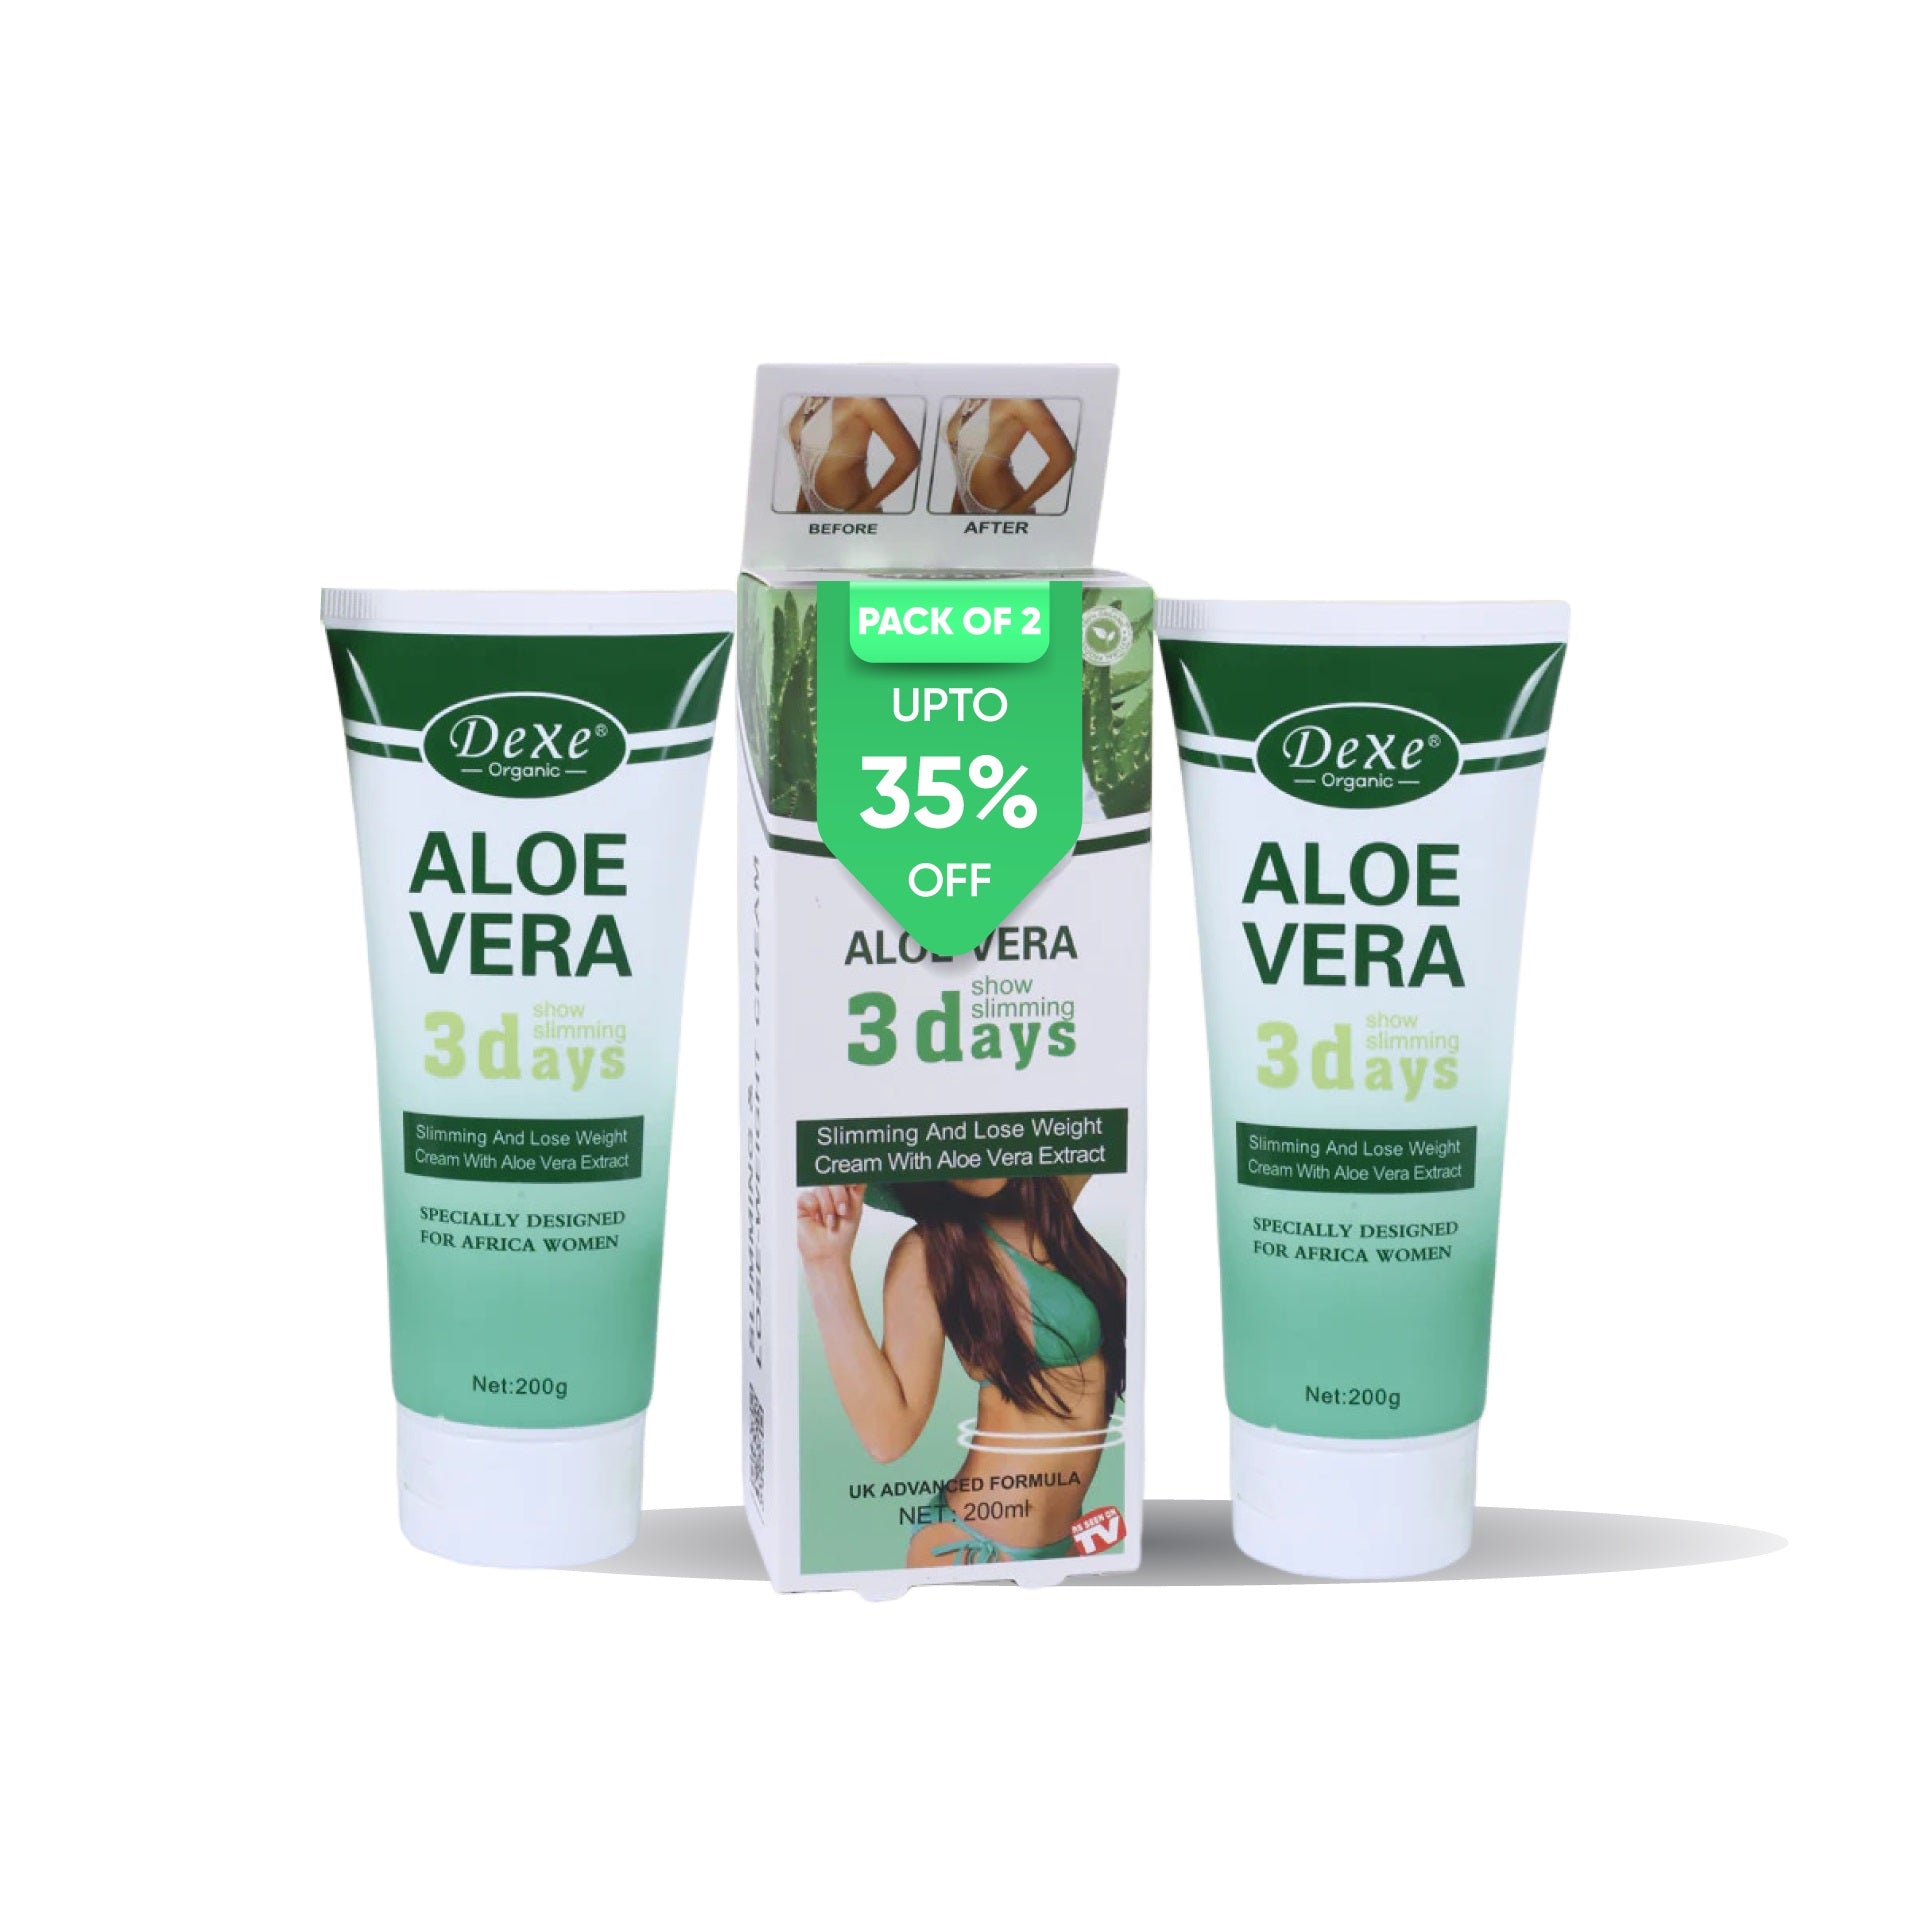 Aloe Vera Slimming Cream Body Cream Pack of Two